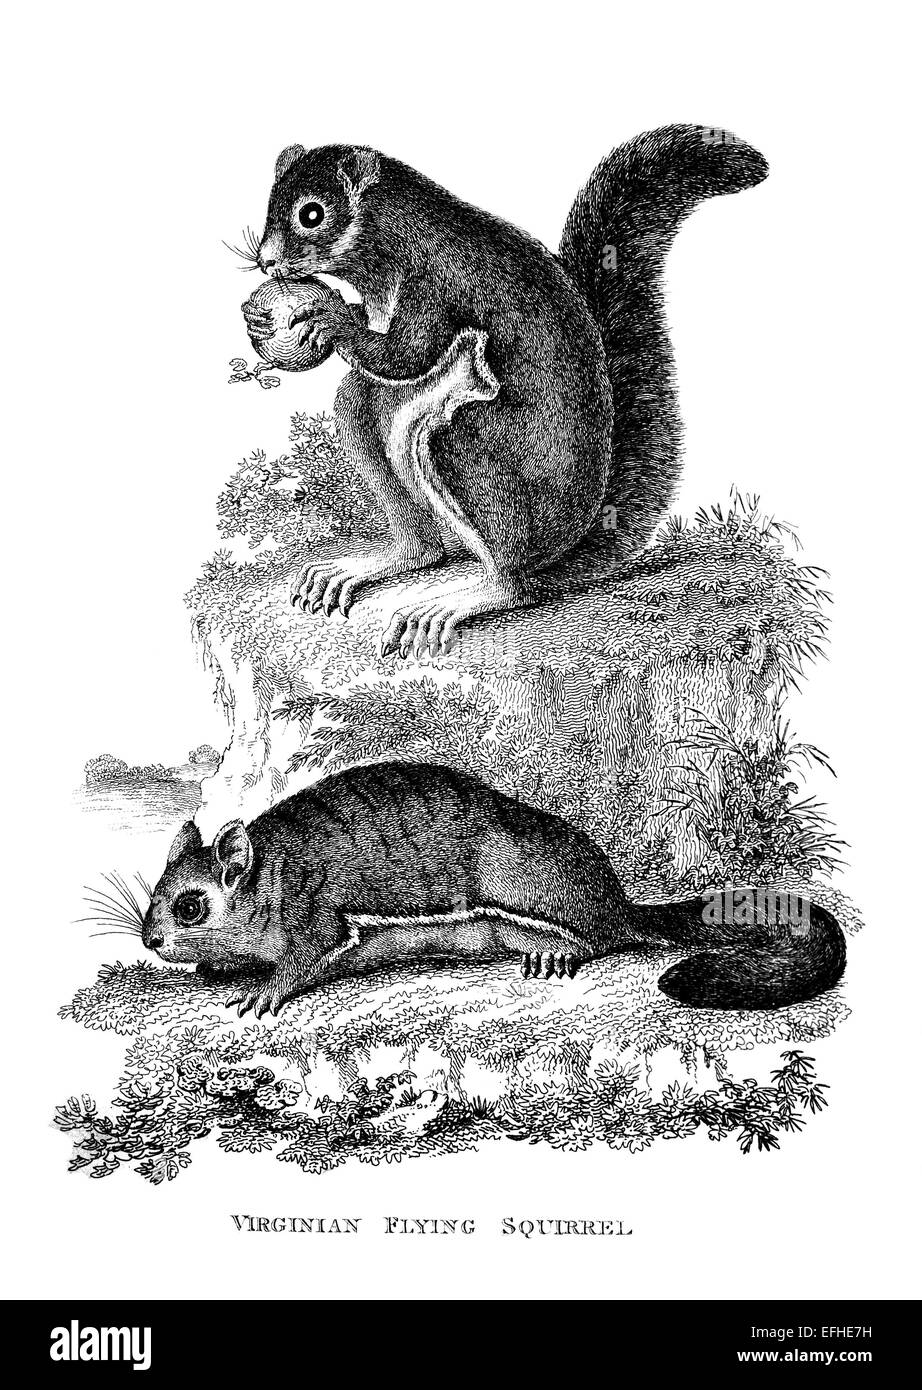 Incisione in stile vittoriano di uno scoiattolo battenti. Restaurata digitalmente immagine da una metà del XIX secolo enciclopedia. Foto Stock